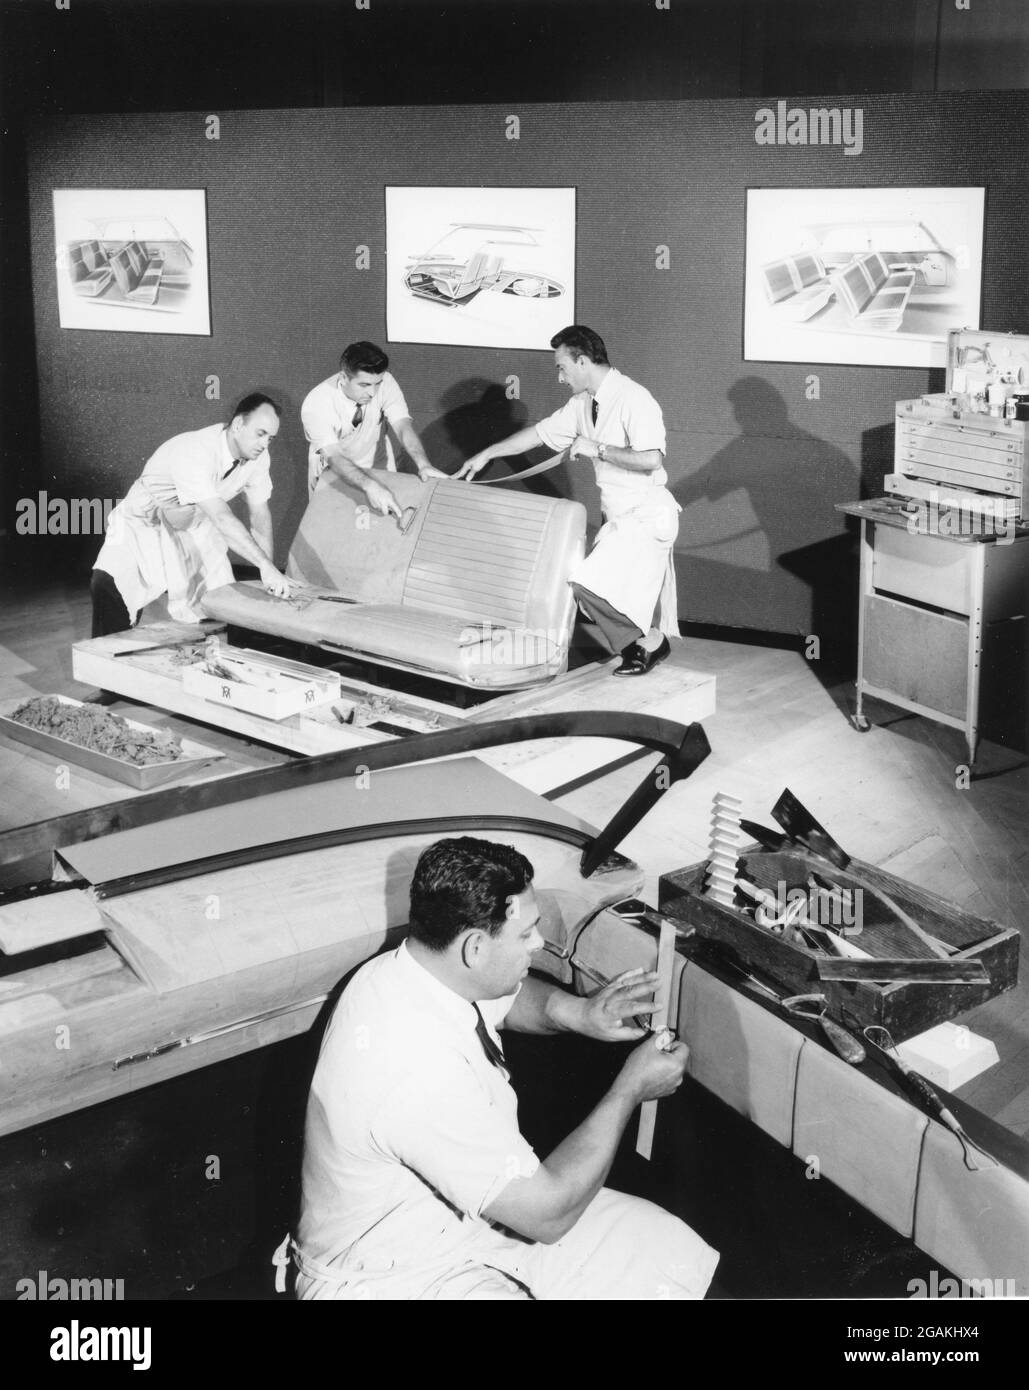 Les concepteurs d'automobiles travaillent à partir de dessins pour développer des modèles d'intérieur en 3 dimensions pour les voitures futures, Detroit, MI, 1967. (Photo par automobile Manufacturers Association/RBM Vintage Images) Banque D'Images